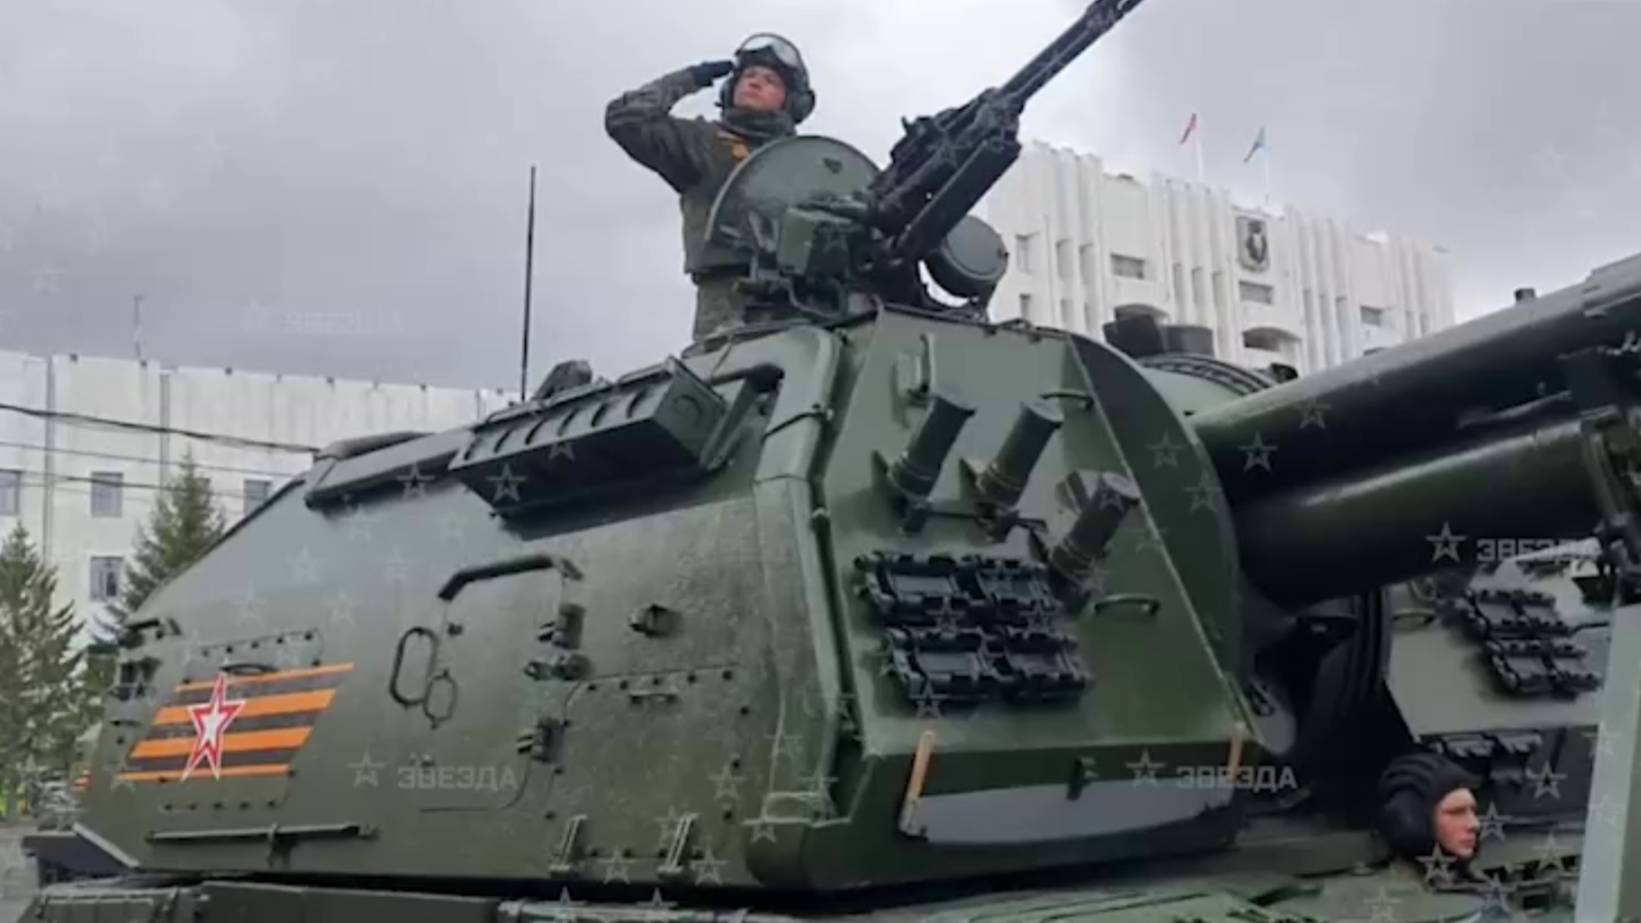 Т-34, Катюша и Искандер времён ВОВ прошли на Параде Победы в Хабаровске